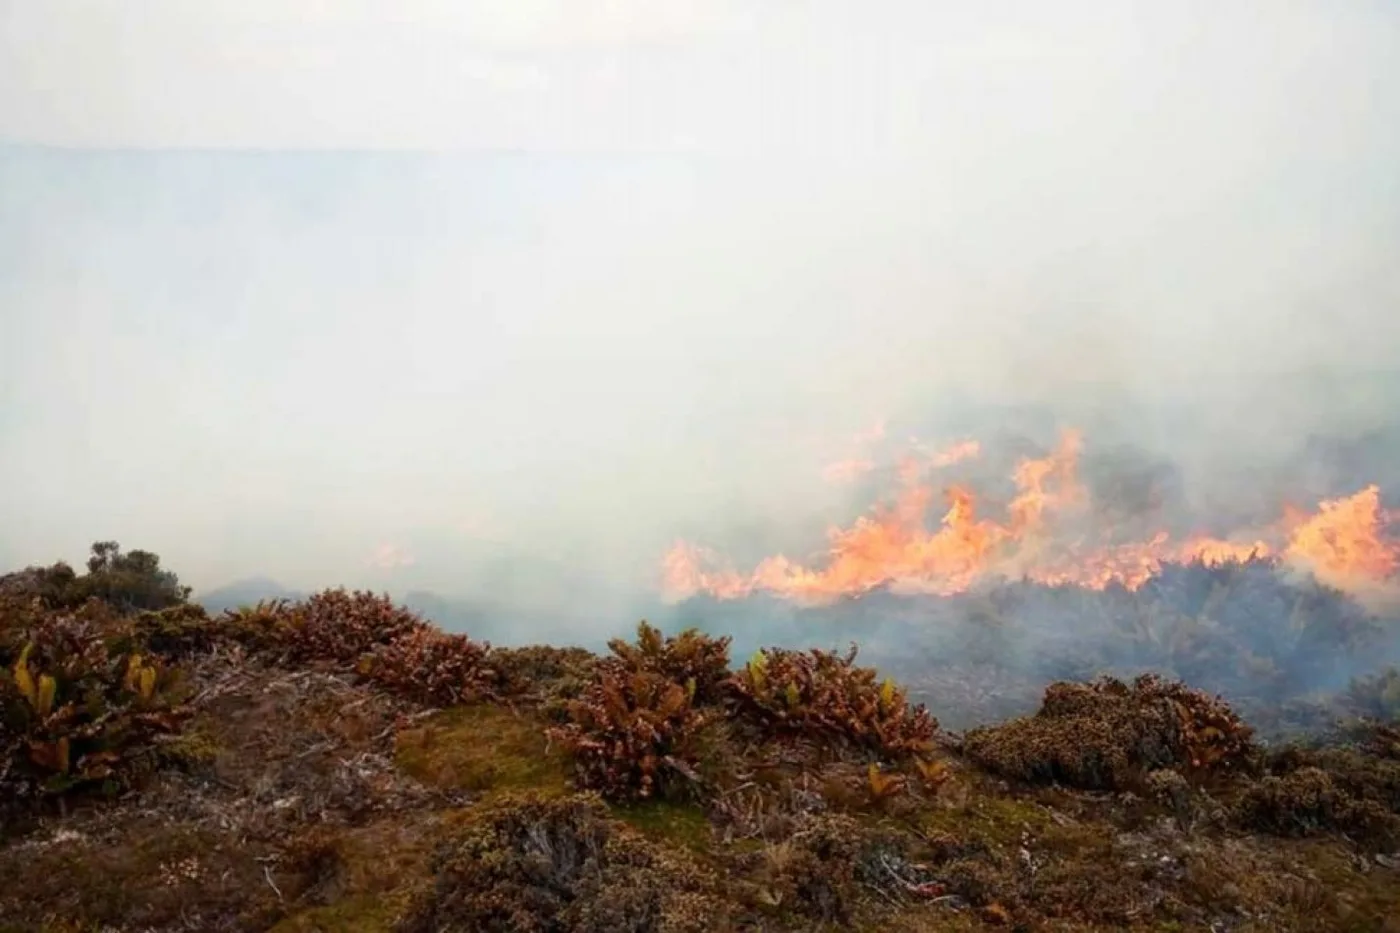 Foto de los campos del establecimiento Murrell incendiado y del humo de los pastizales (Foto FIFireAndRescue).